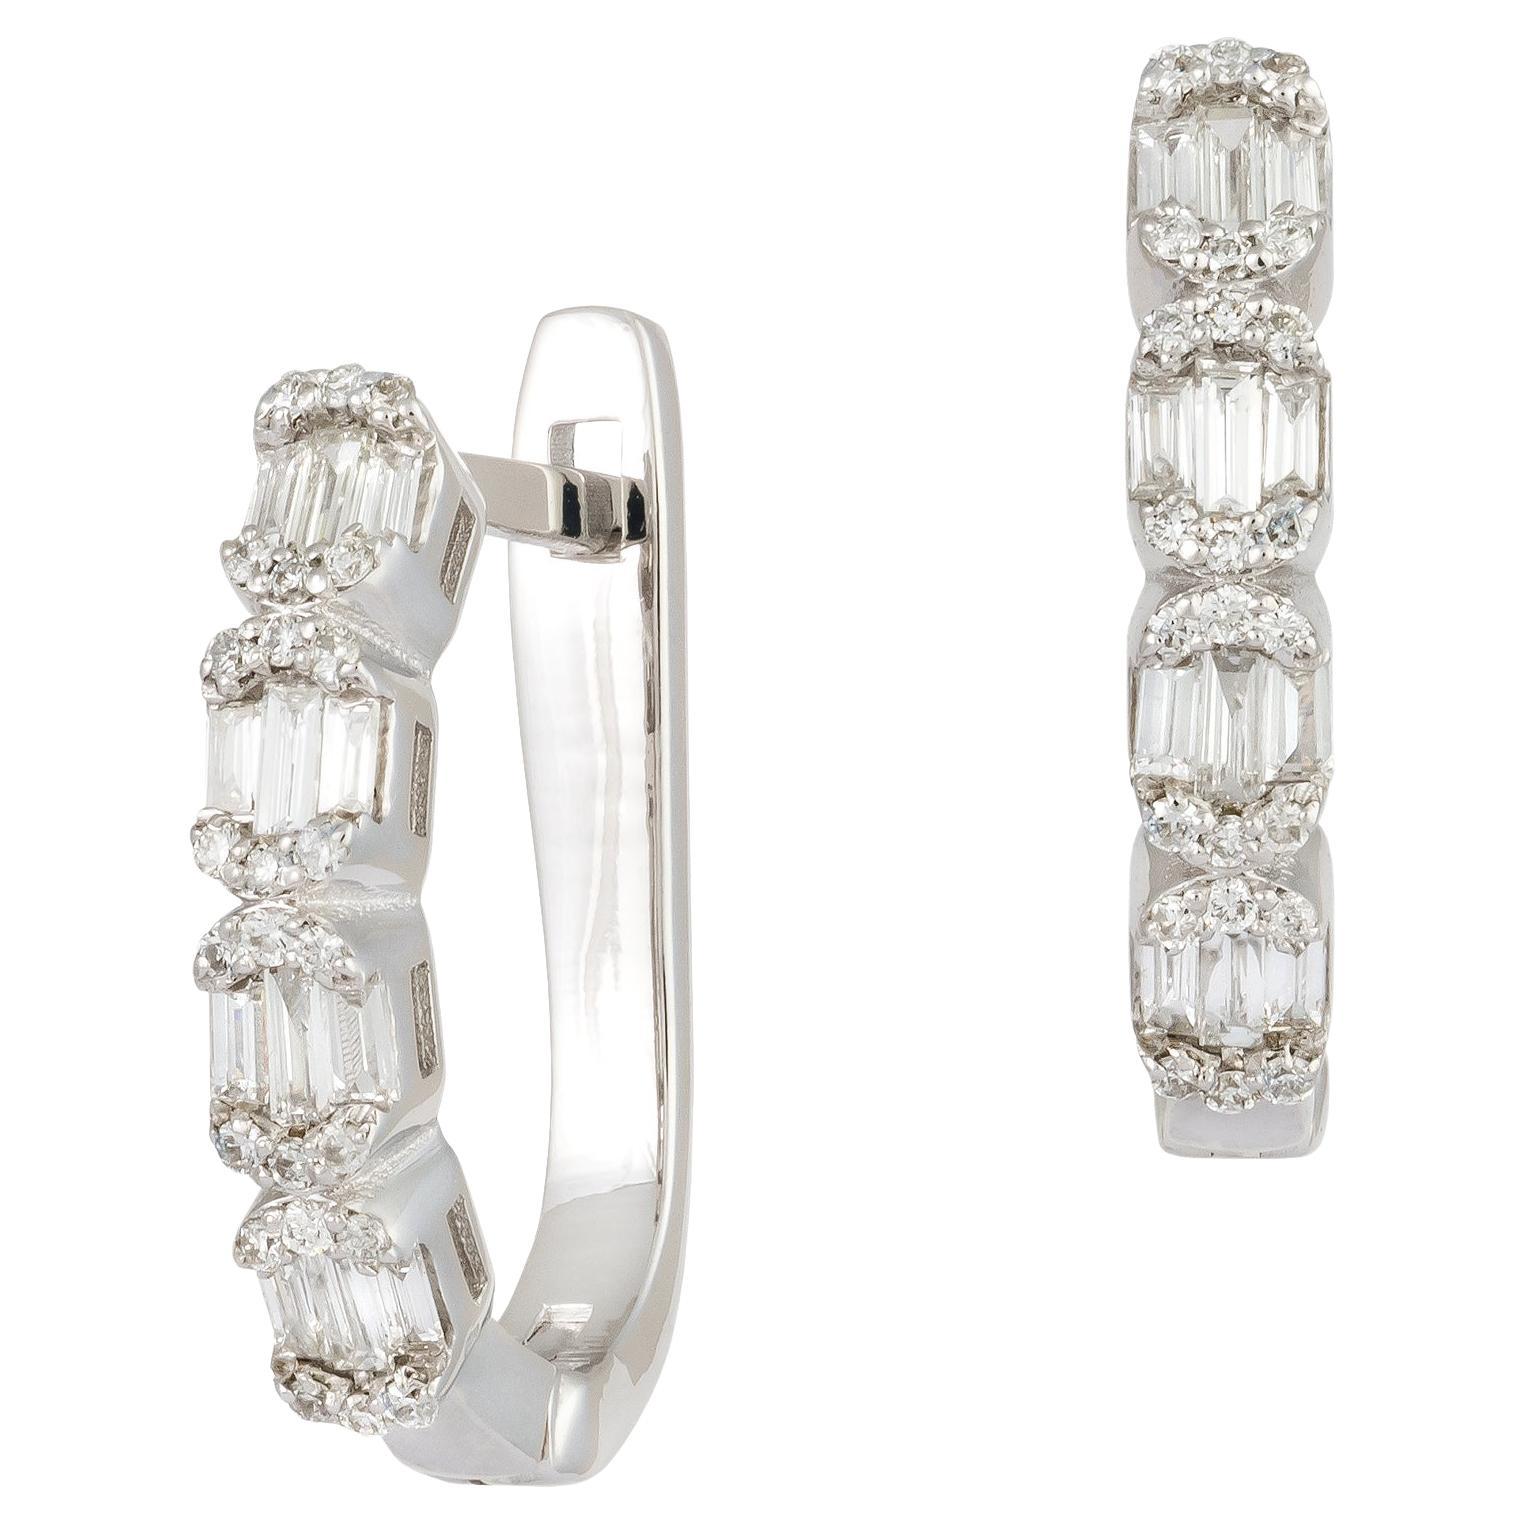 Lever-Back White Gold 18K Earrings  Diamond For Her